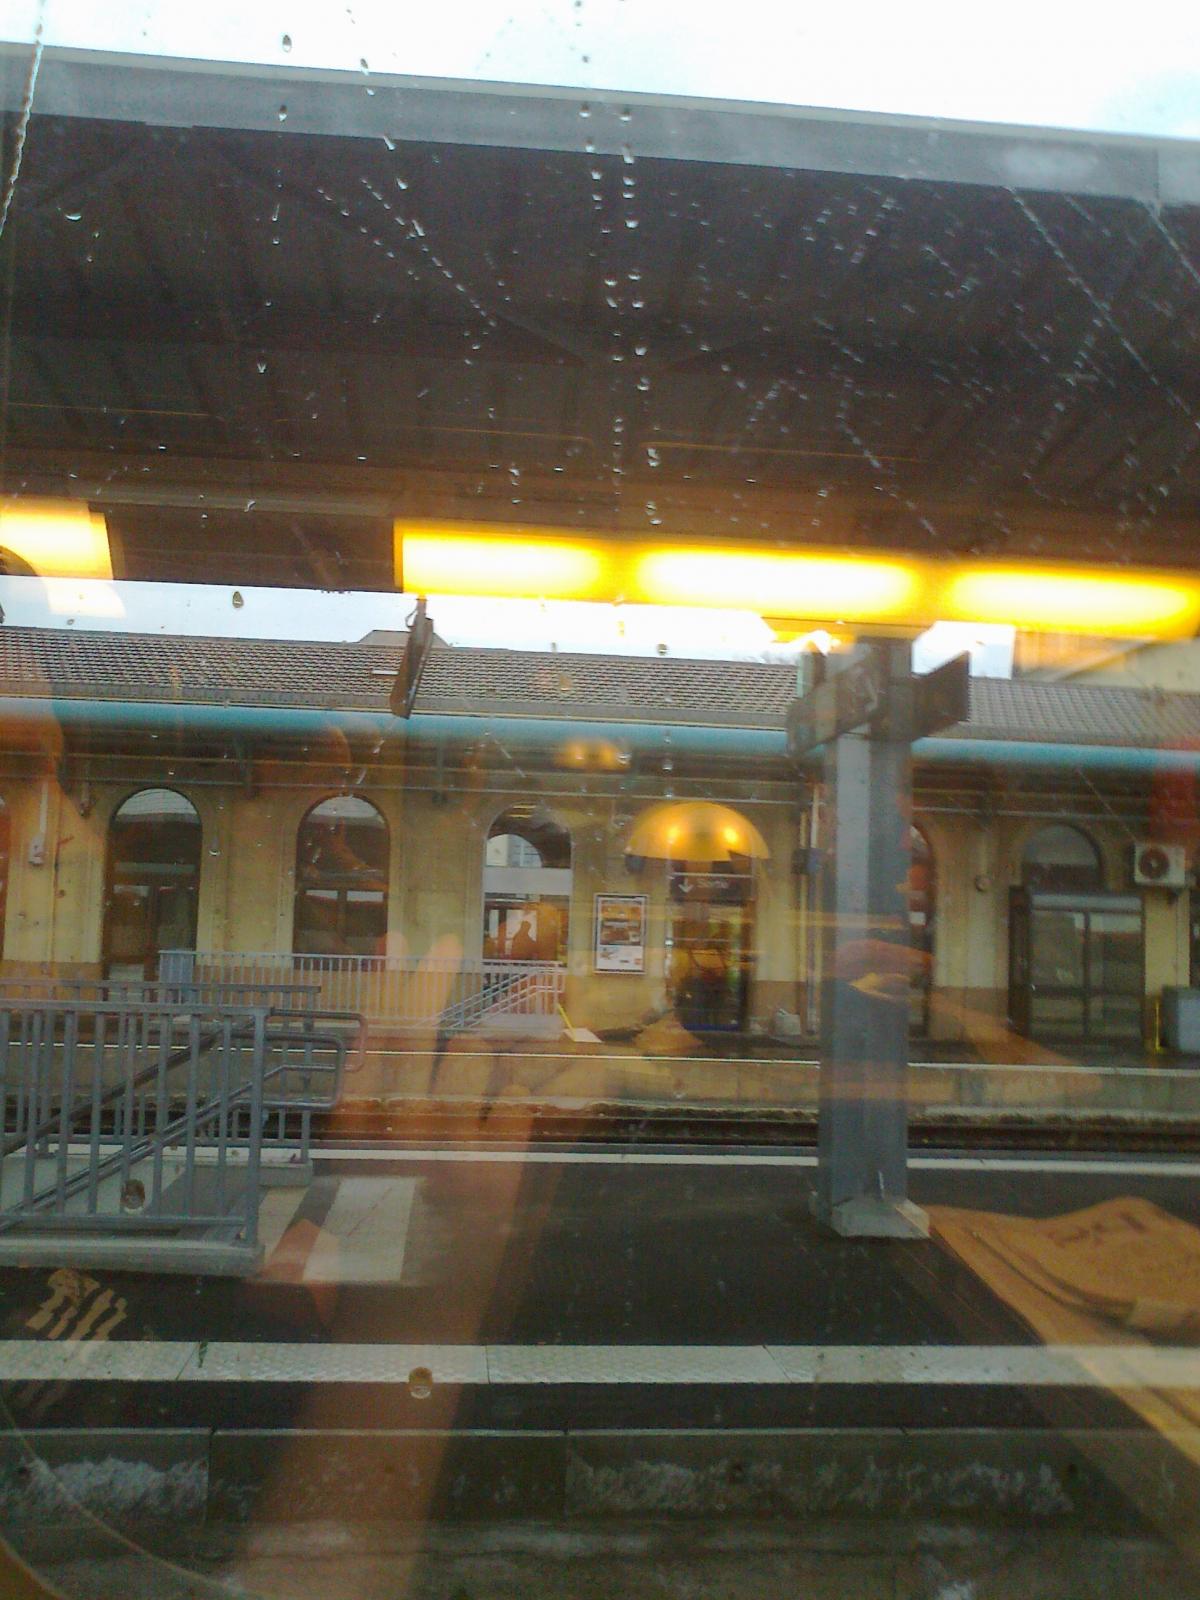 Paysages surréalistes vu du train Genève - Paris ()